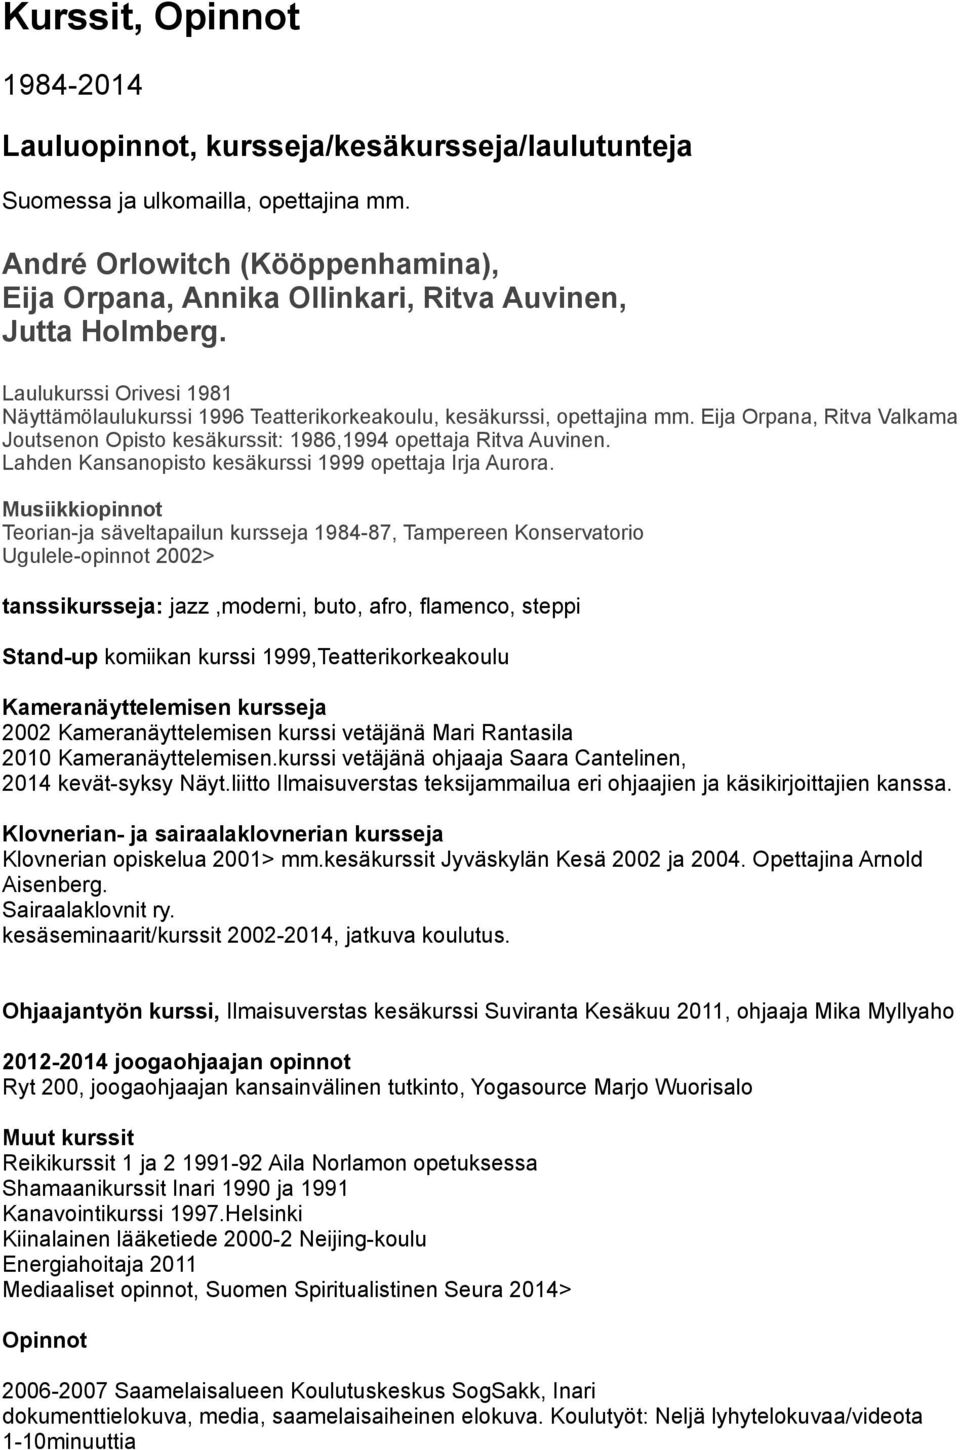 Eija Orpana, Ritva Valkama Joutsenon Opisto kesäkurssit: 1986,1994 opettaja Ritva Auvinen. Lahden Kansanopisto kesäkurssi 1999 opettaja Irja Aurora.